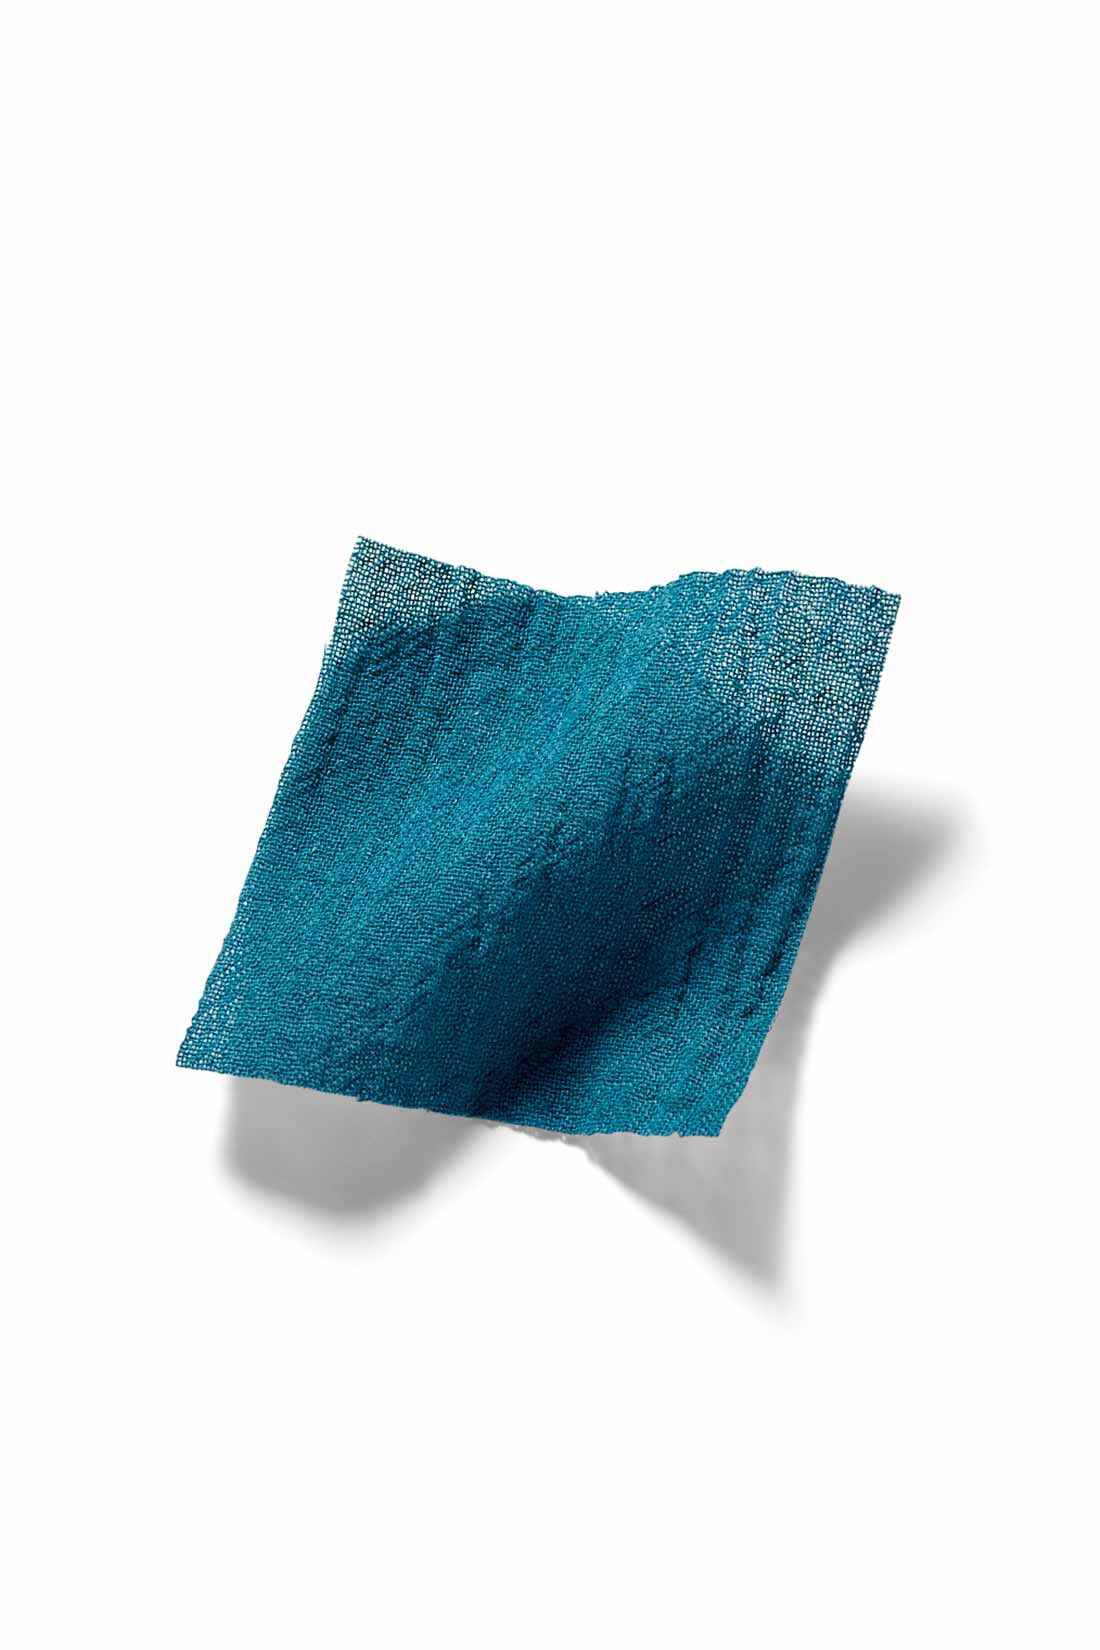 IEDIT|IEDIT[イディット]　楊柳（ようりゅう）コットン素材のティアードロングブラウス〈ブルーグリーン〉|夏の素肌にうれしい綿100％。今年らしいほんのり透け感と表面にシボ感のある薄手の楊柳素材を使用。